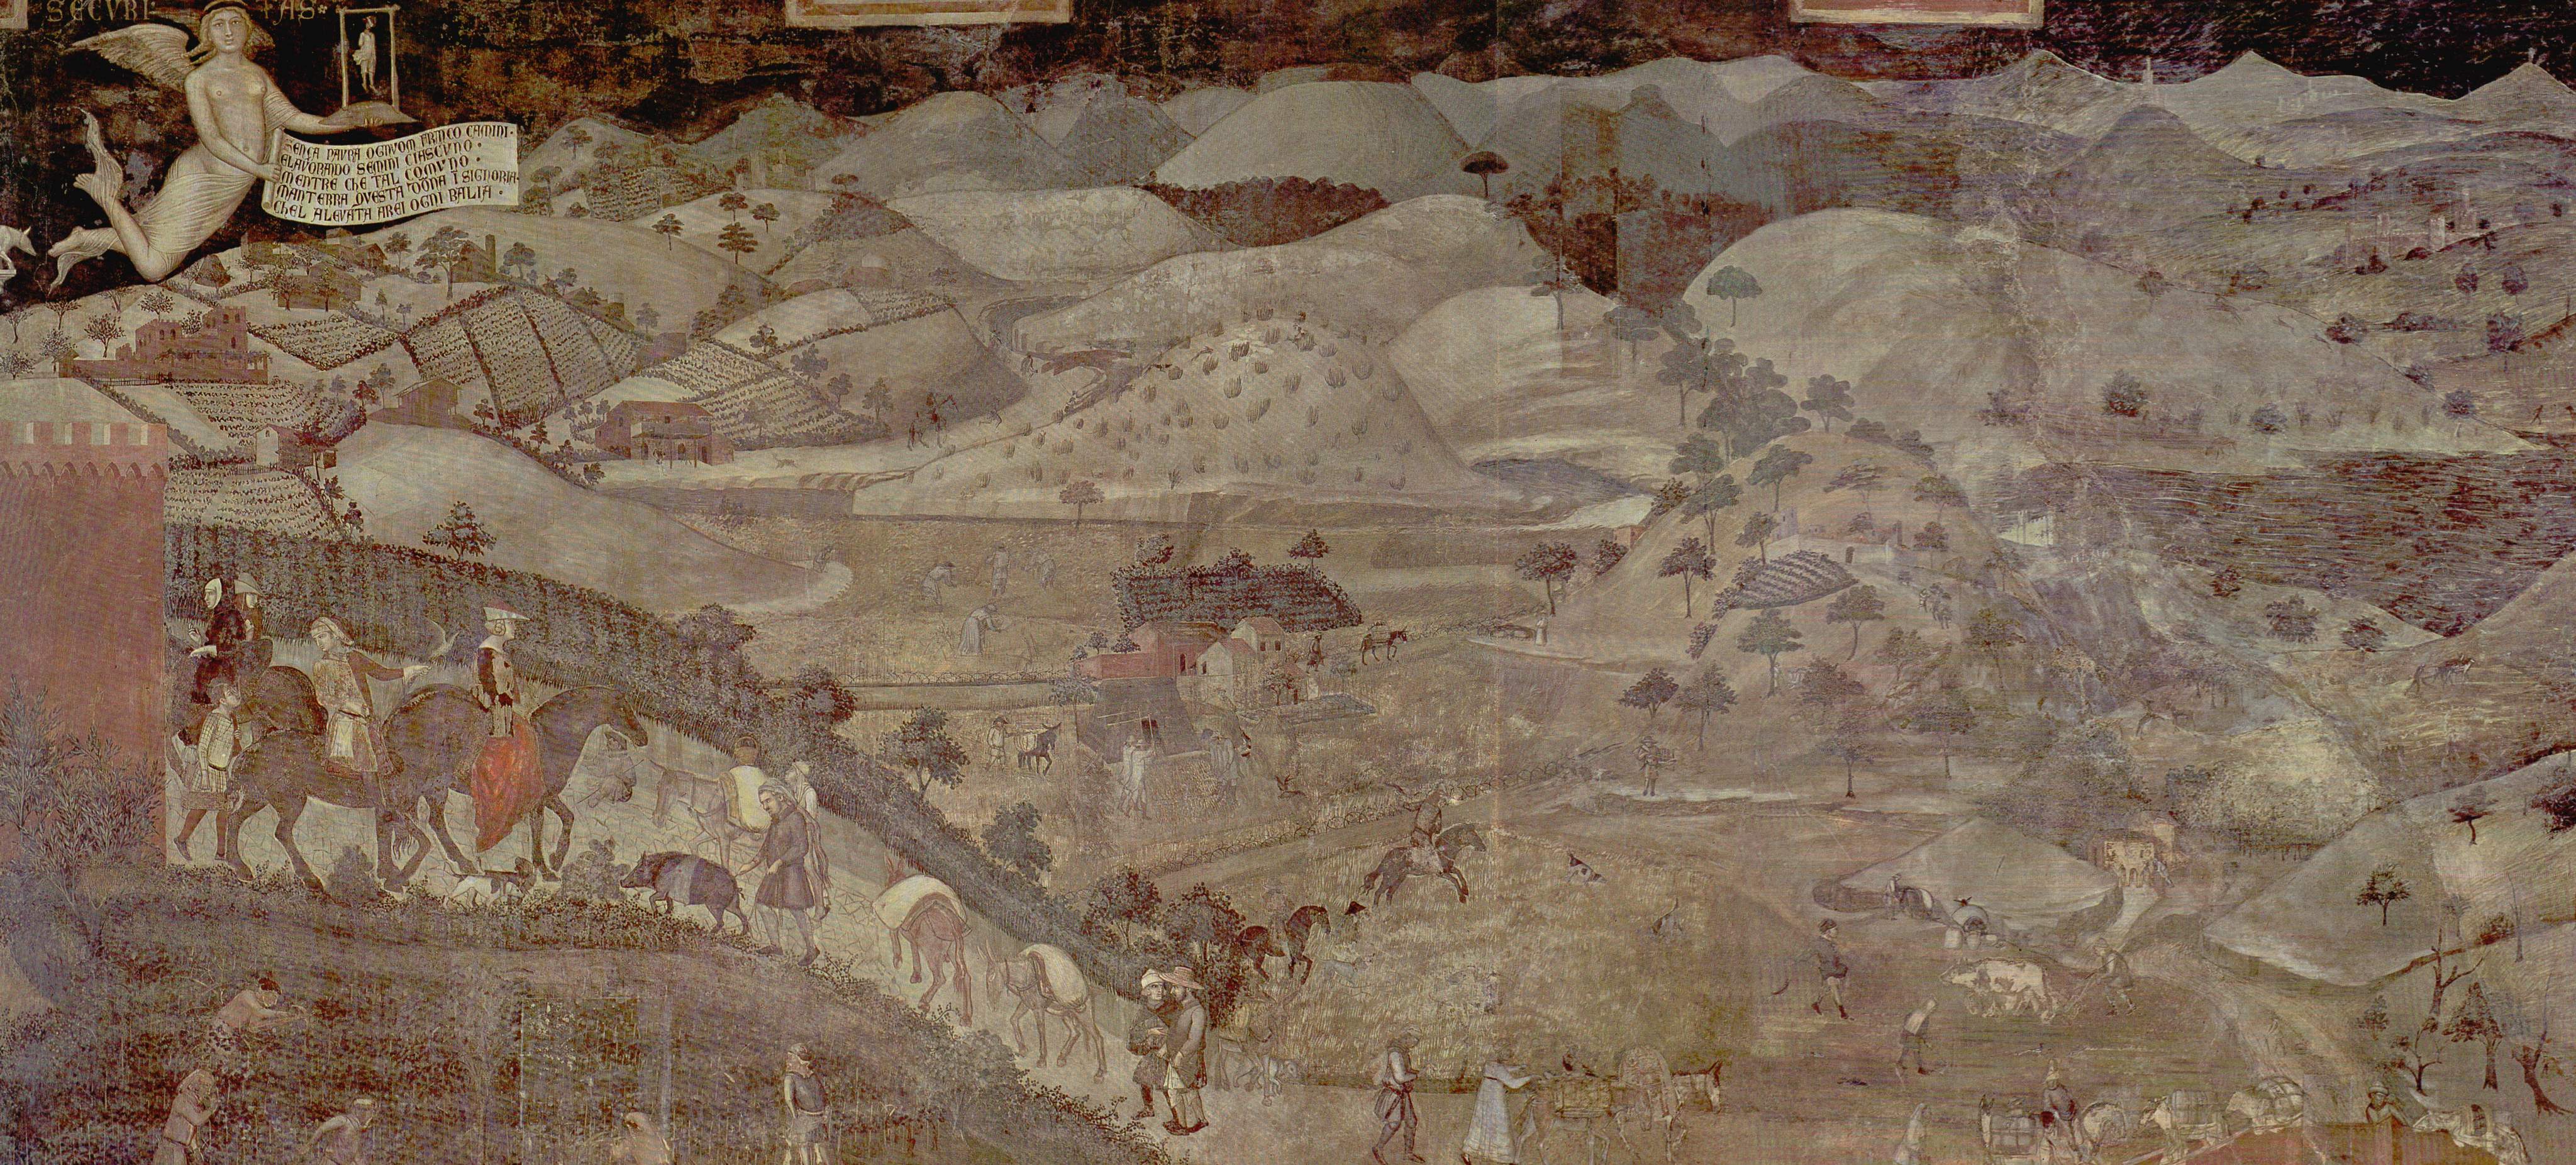 Ambrogio Lorenzetti, Effetti del Buon Governo nella campagna, 1338-1339